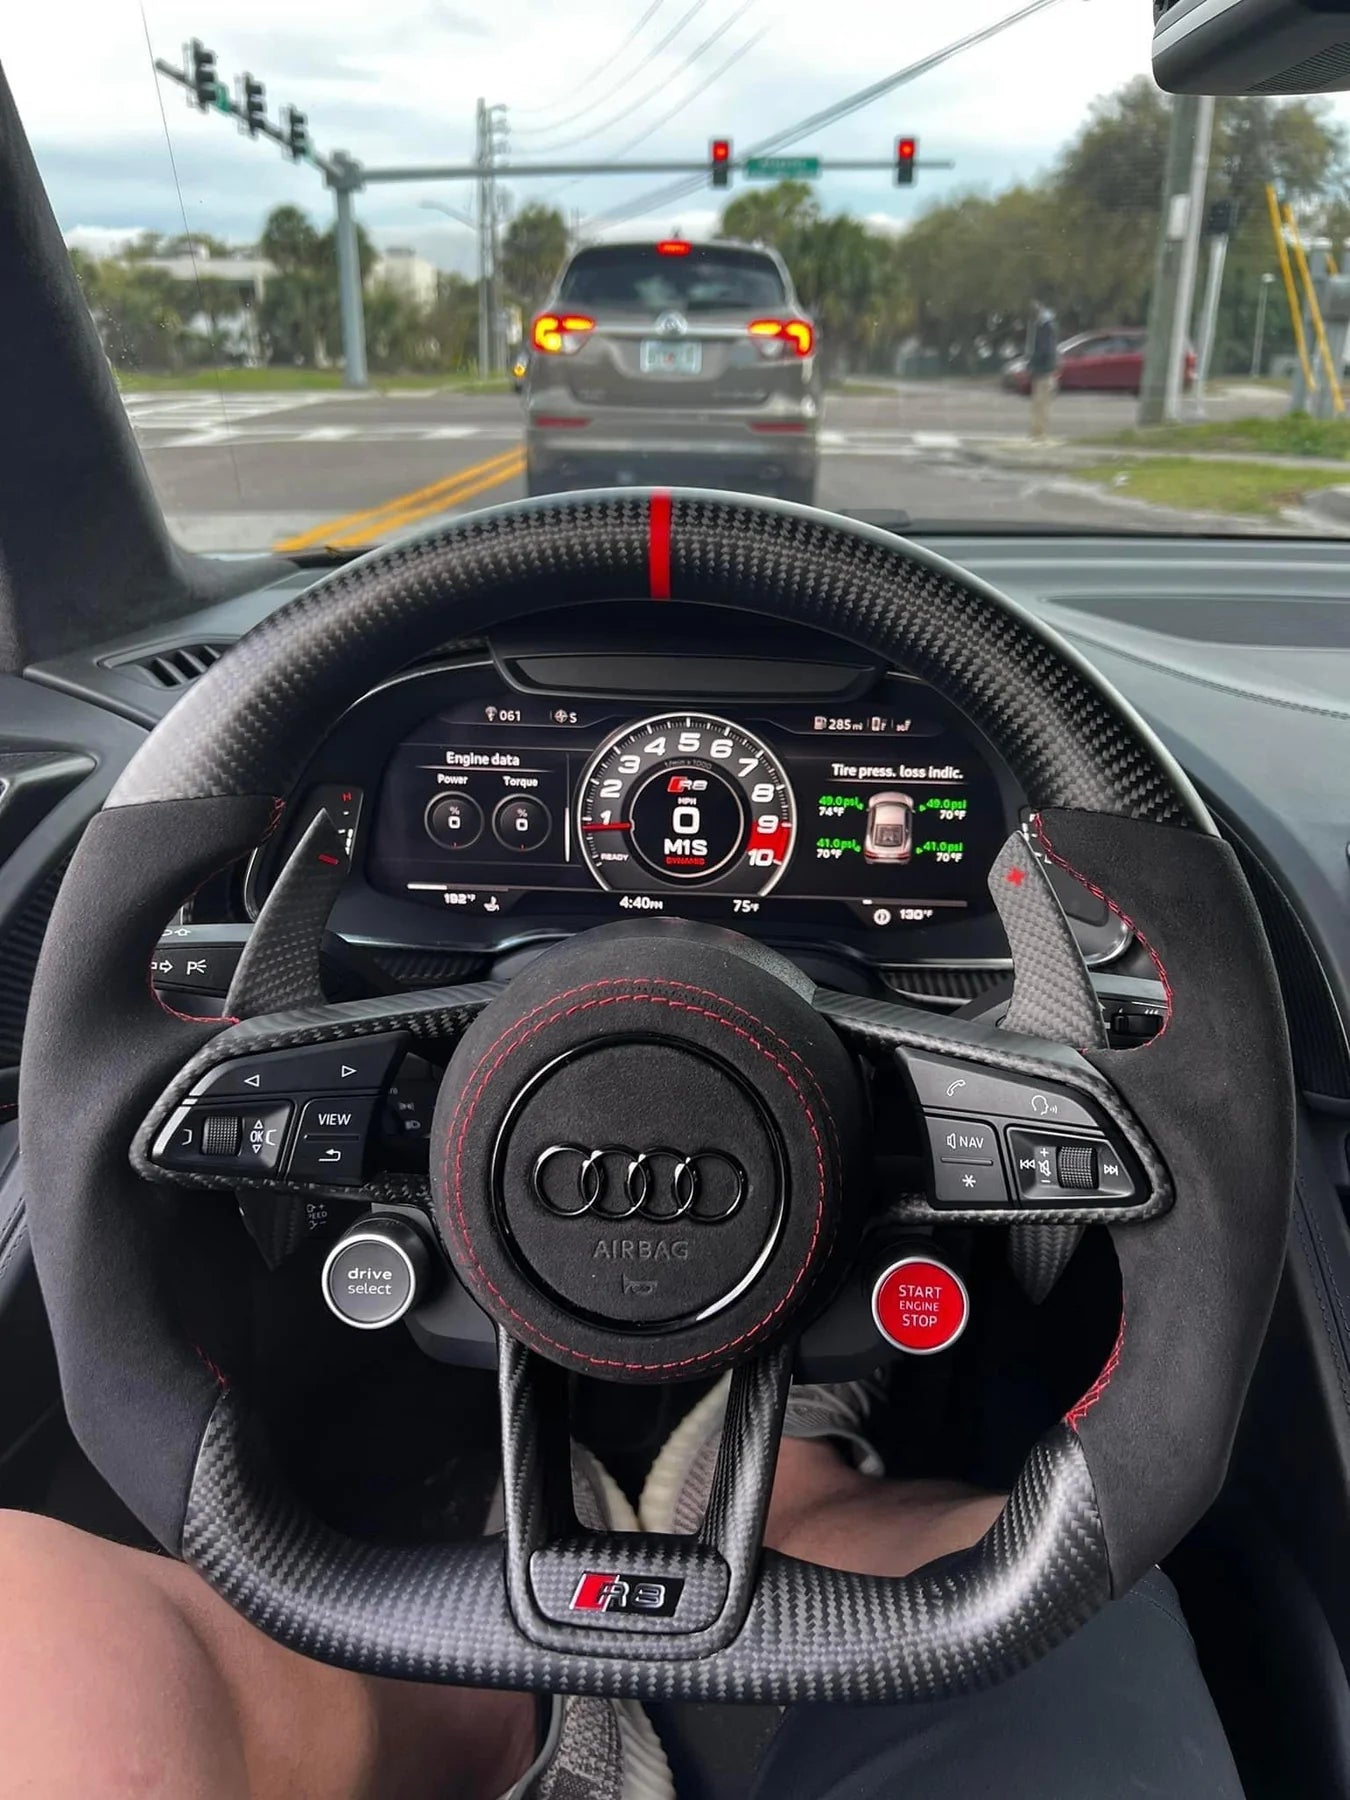 The Ultimate Custom Steering Wheel Upgrade